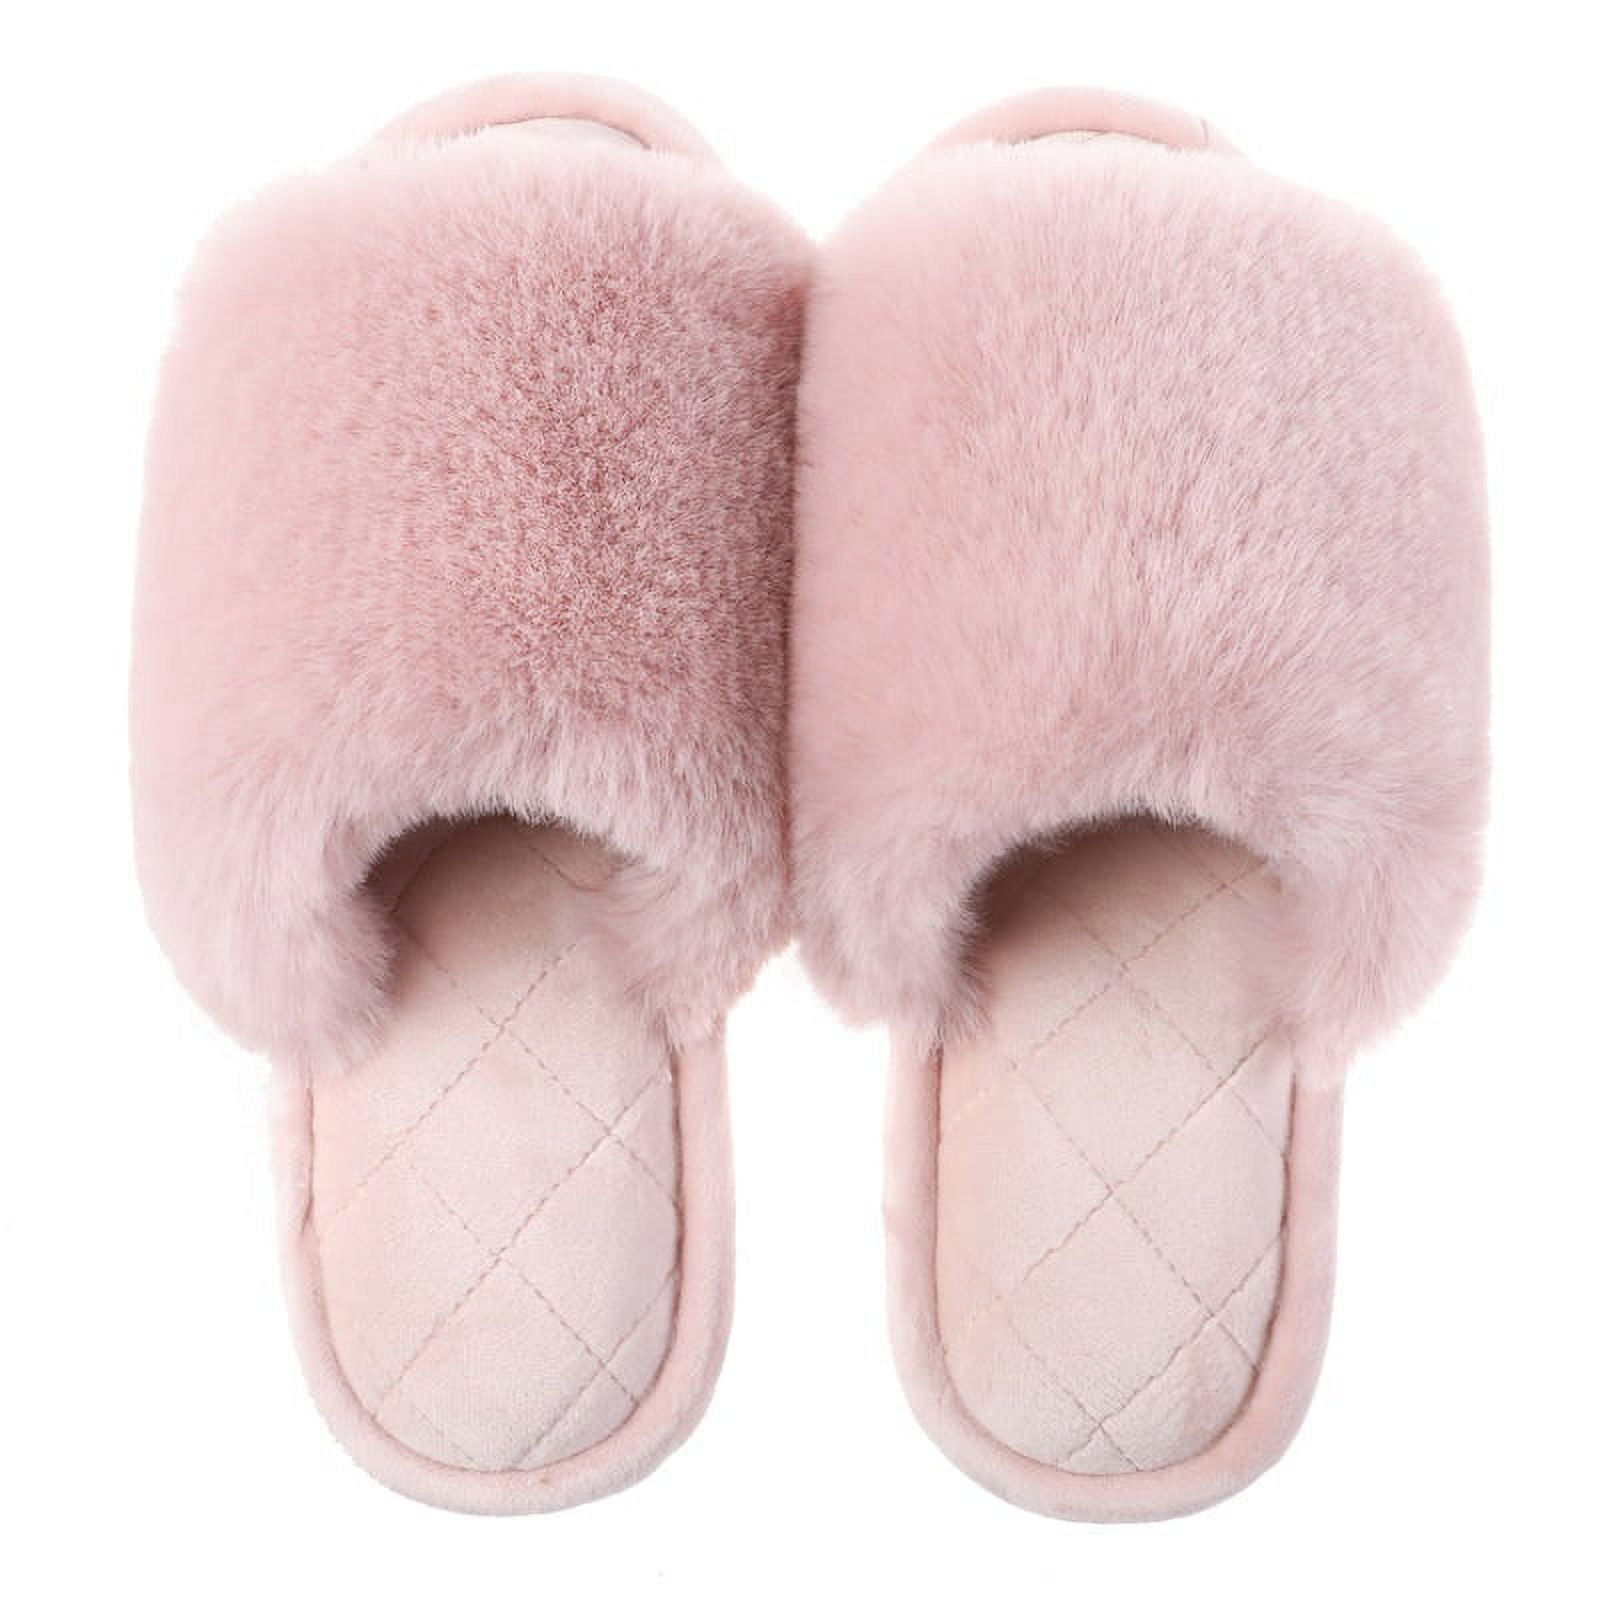 Dekkin Faux Fur Slip On Home/Indoor Fancy Fluffy Winter Slipper